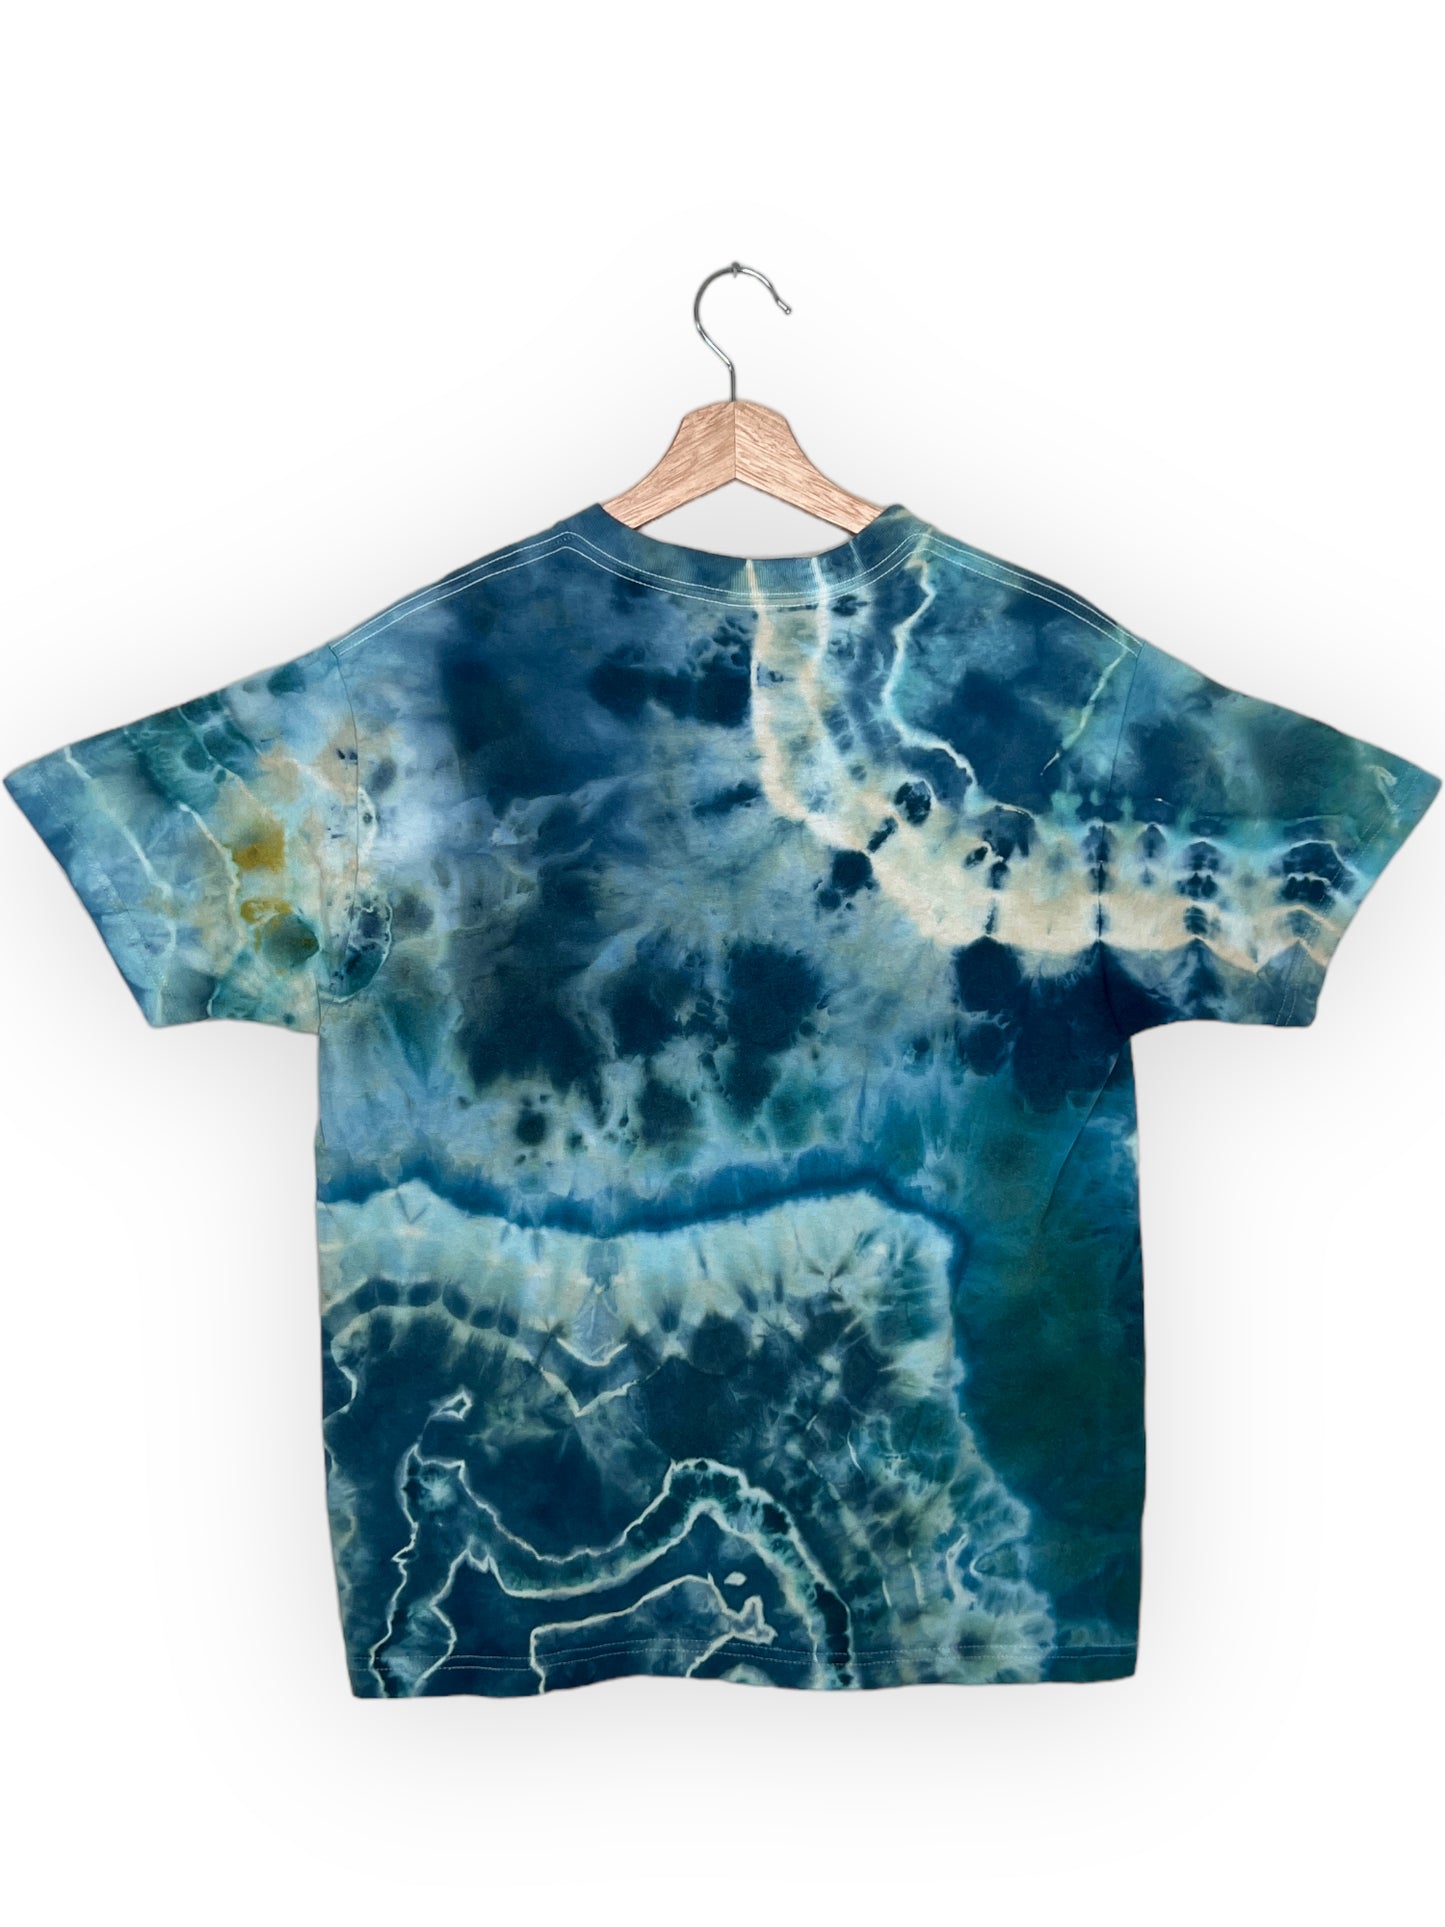 Blue Geode T-Shirt (Medium)